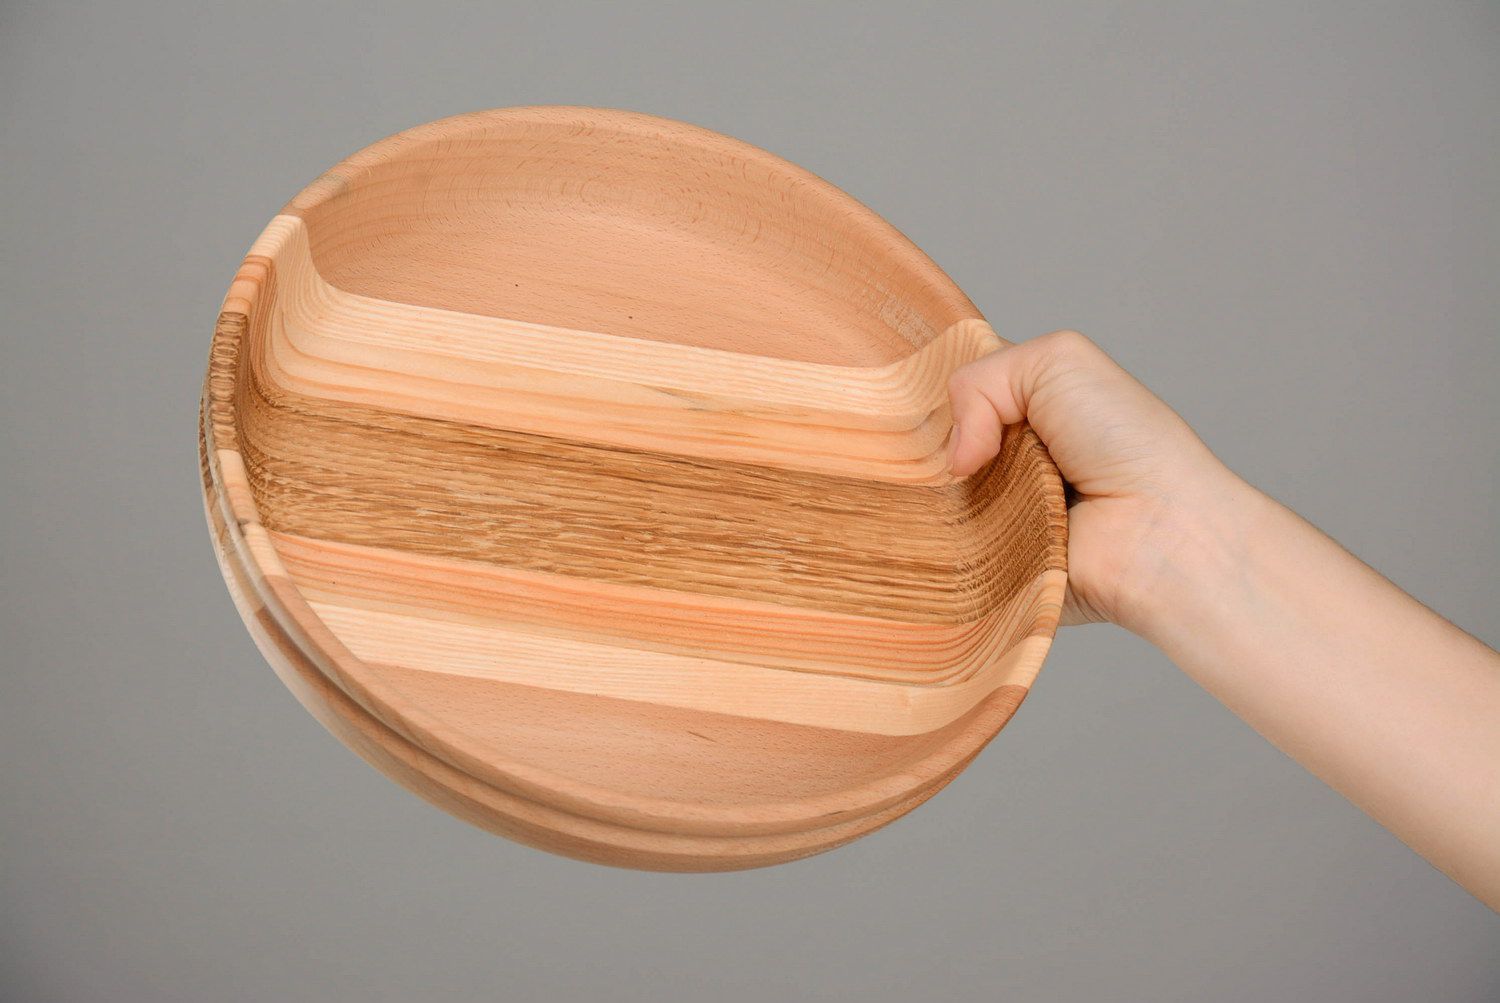 Holz-Teller für Trockenprodukte foto 5